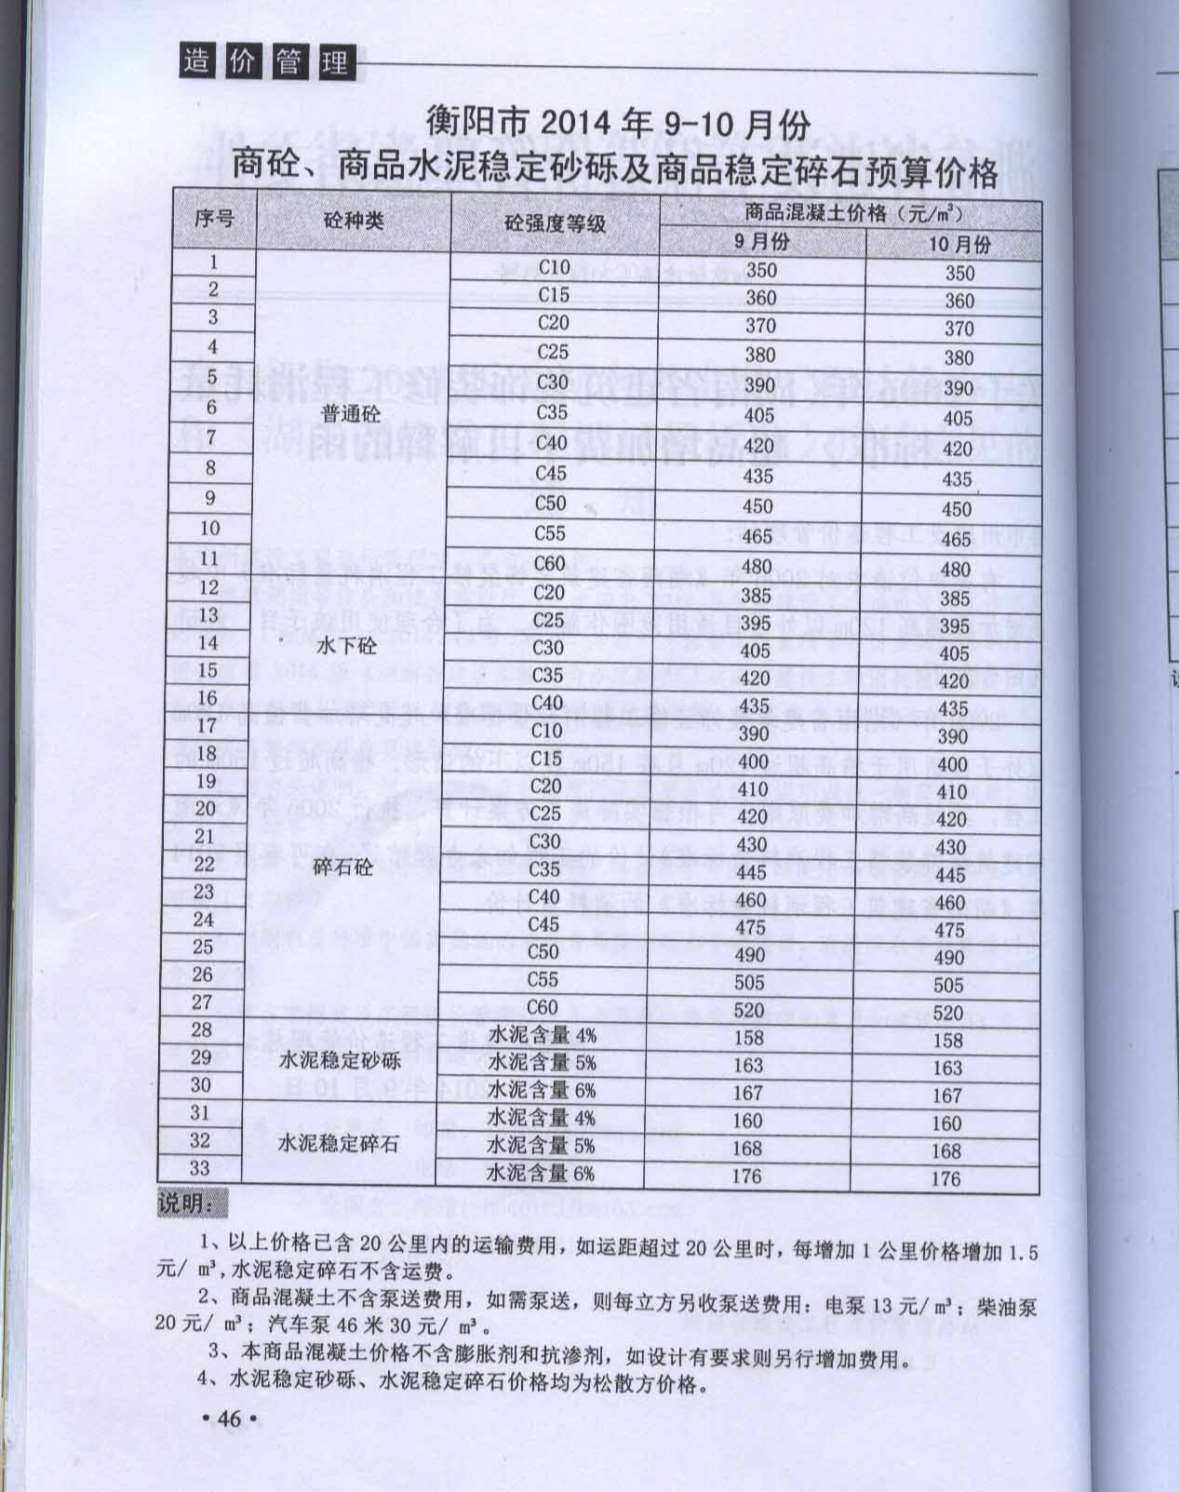 衡阳市2014年5月工程造价信息期刊